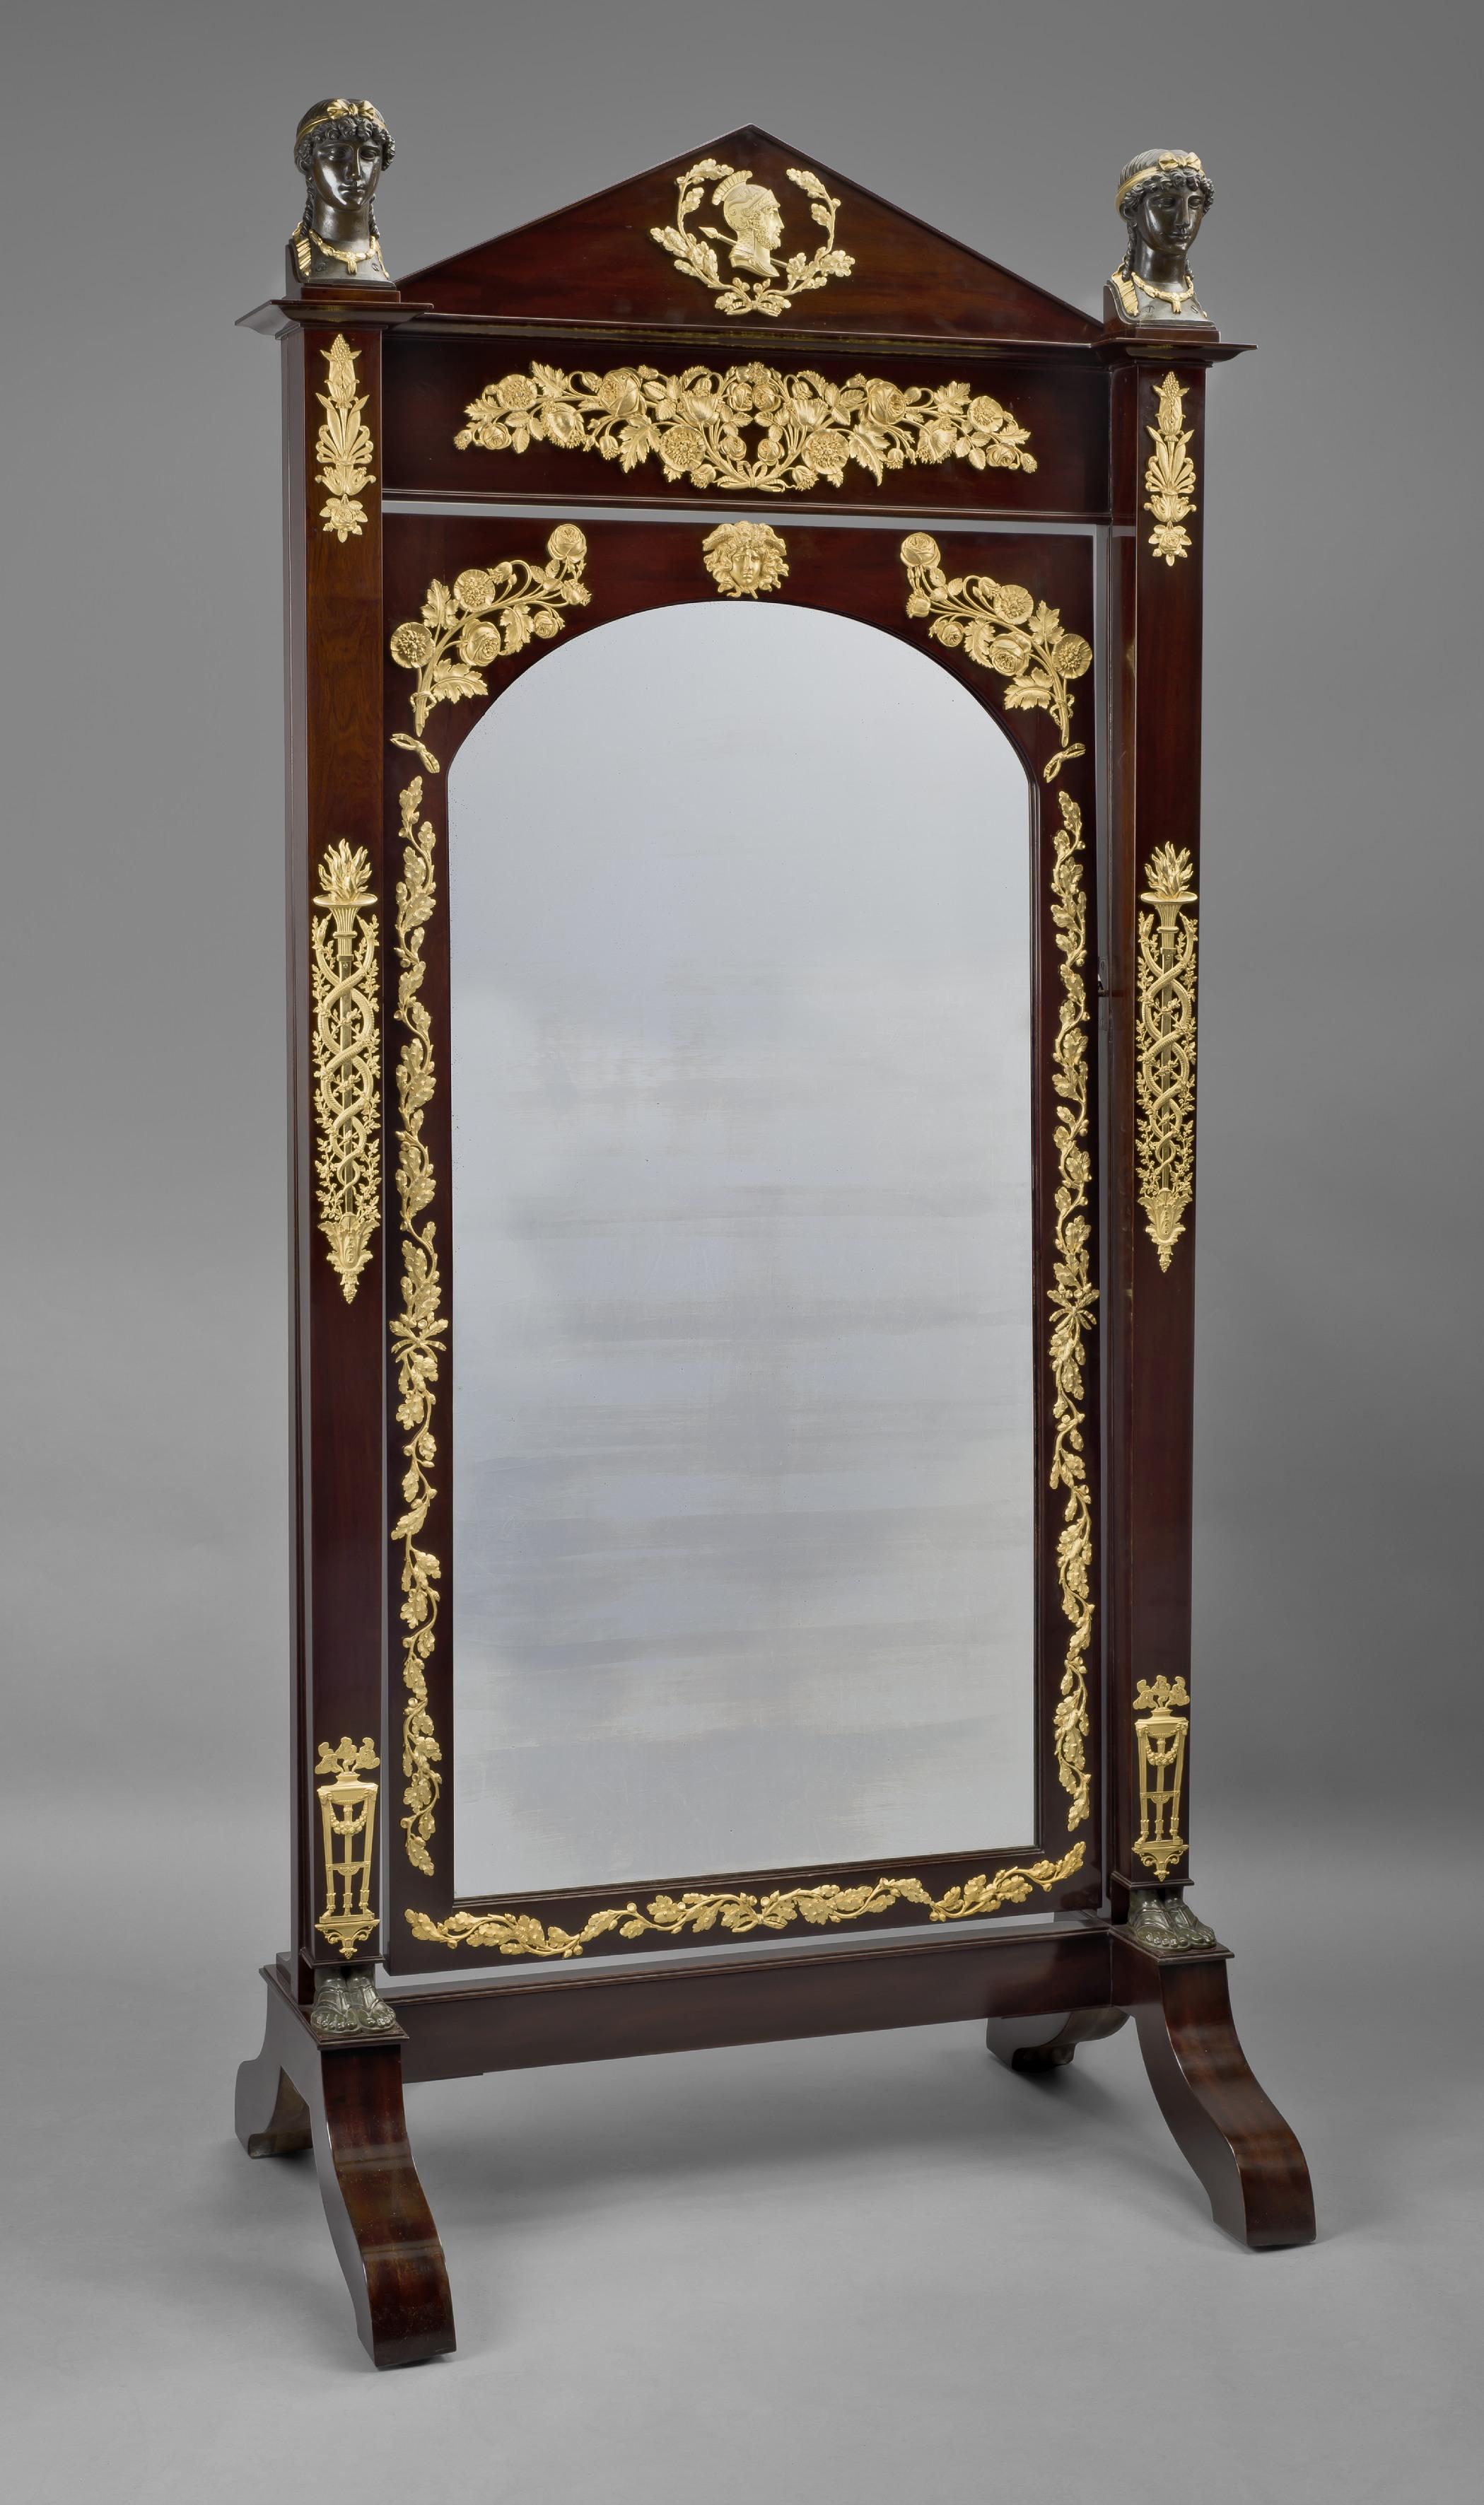 Un très beau miroir Empire en acajou monté sur bronze doré et patiné ou 'Psyché'. 

Français, vers 1820. 

Ce miroir chevalier ou 